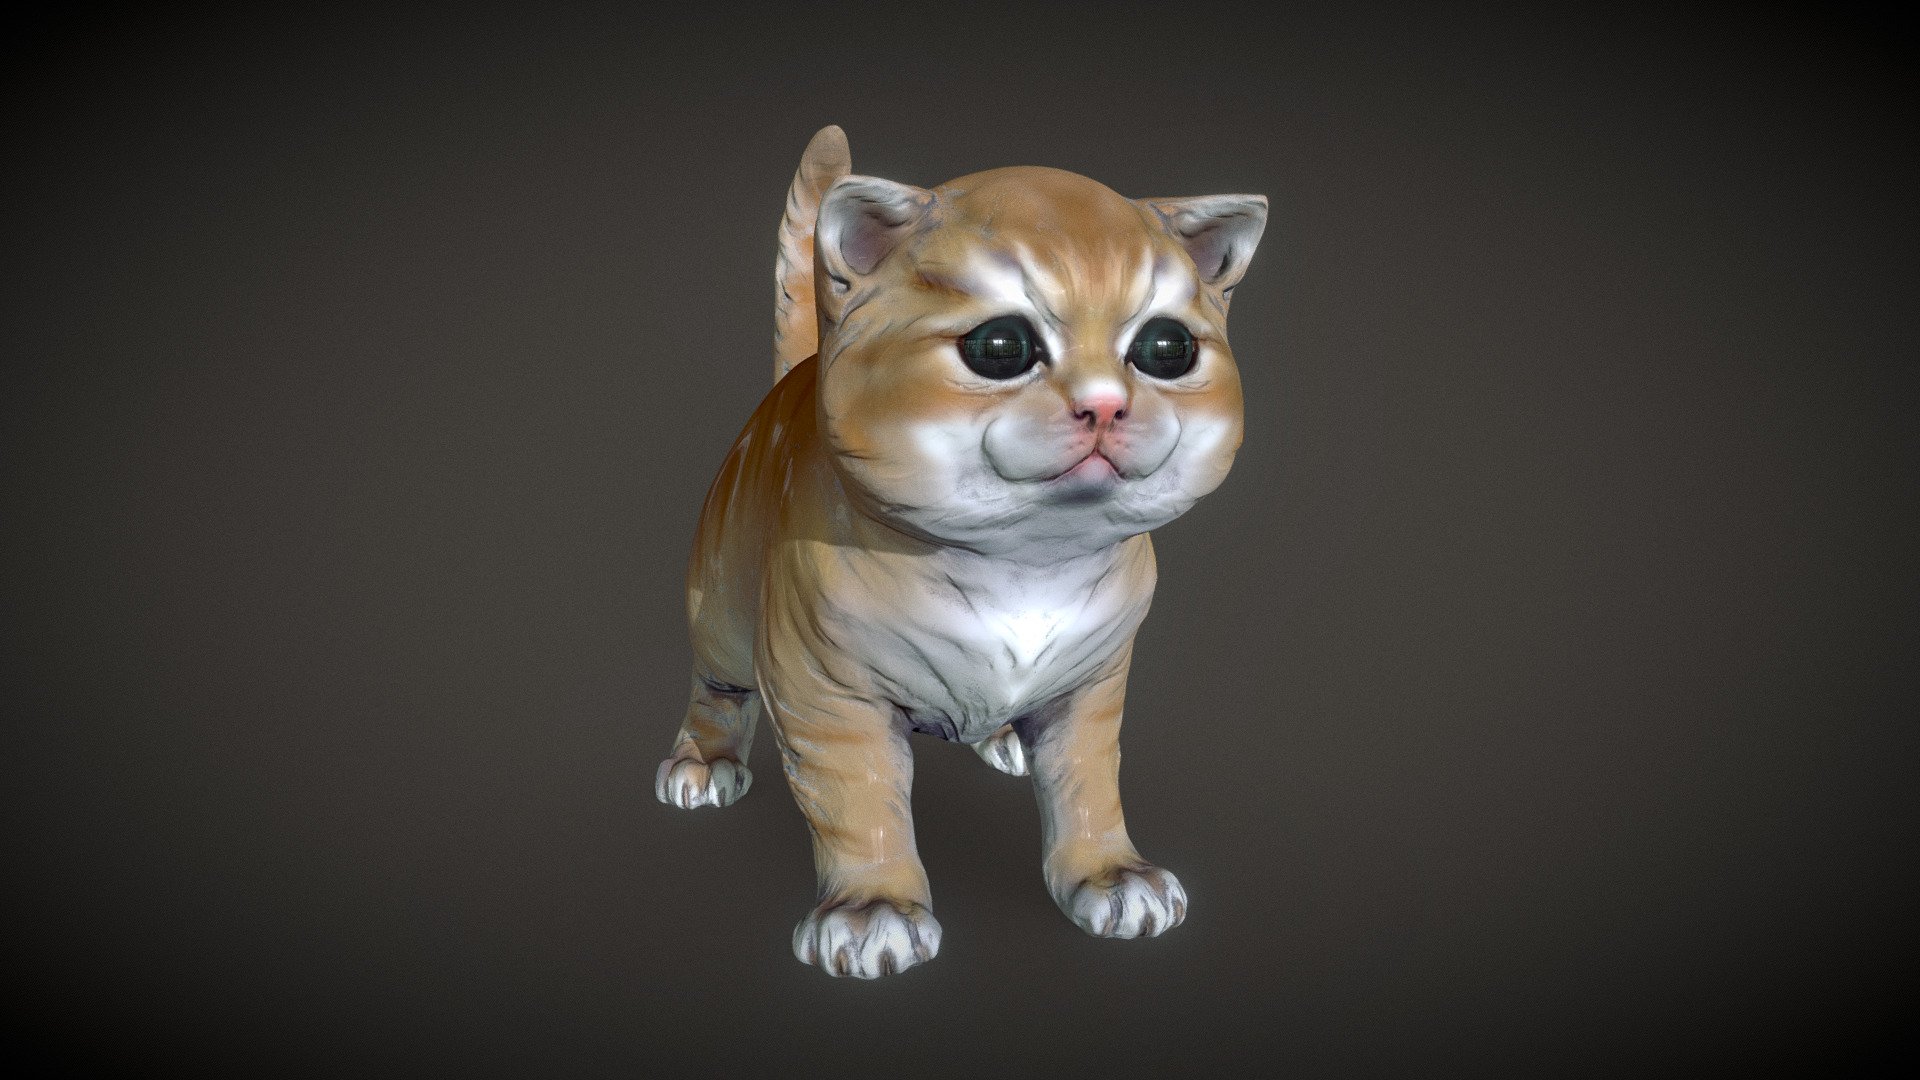 Porcelain toy - Kitten - Buy Royalty Free 3D model by BreathTime 3d model